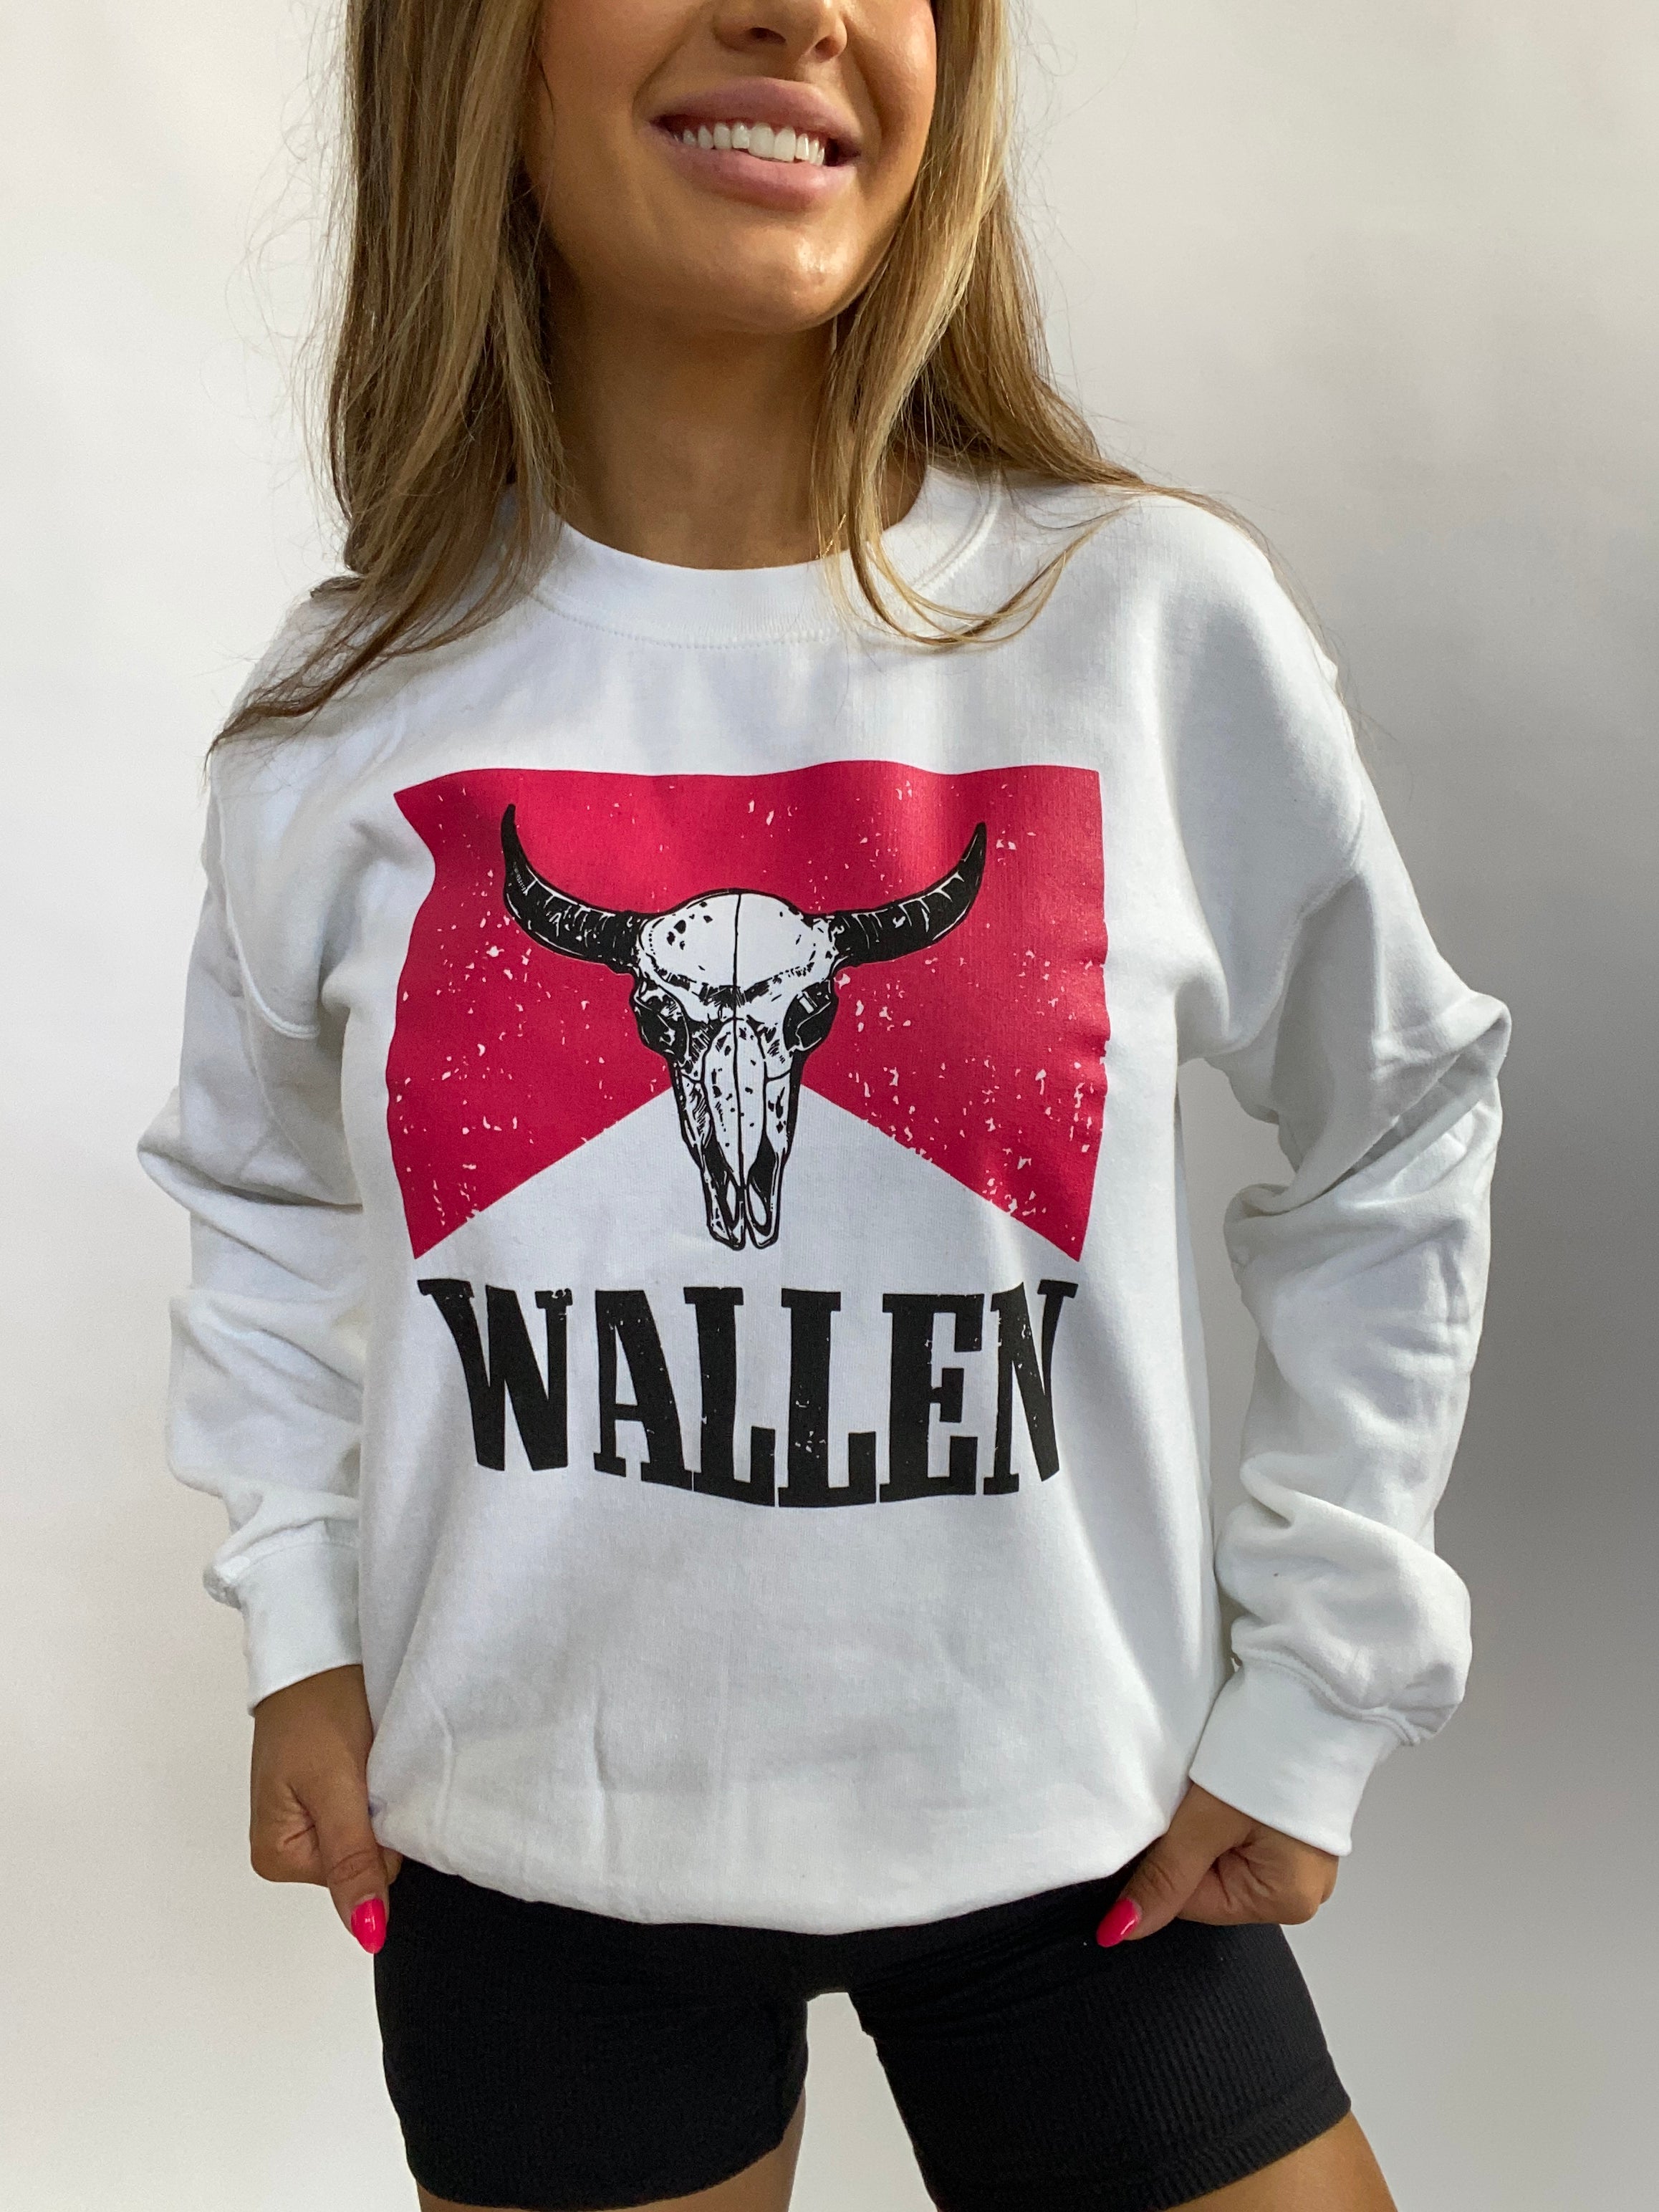 Wallen Bull Skull Crewneck